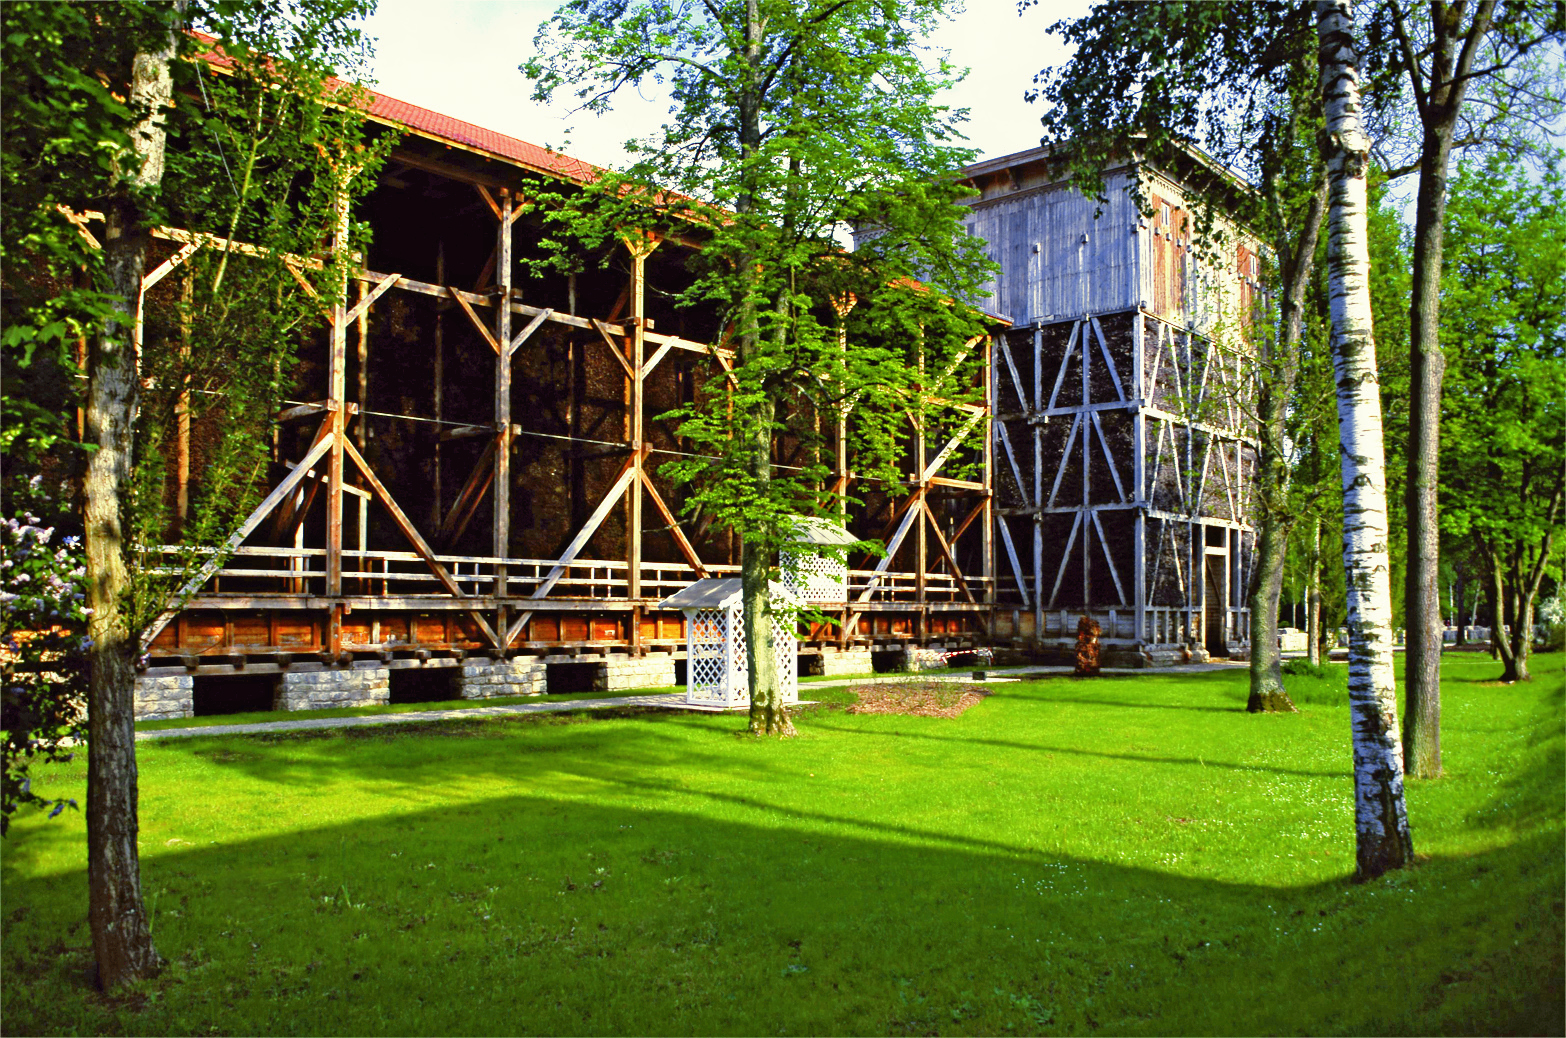 Der Gradierbau von Bad Kissingen war einst mehrere Kilometer lang und diente der Salzgewinnung.
